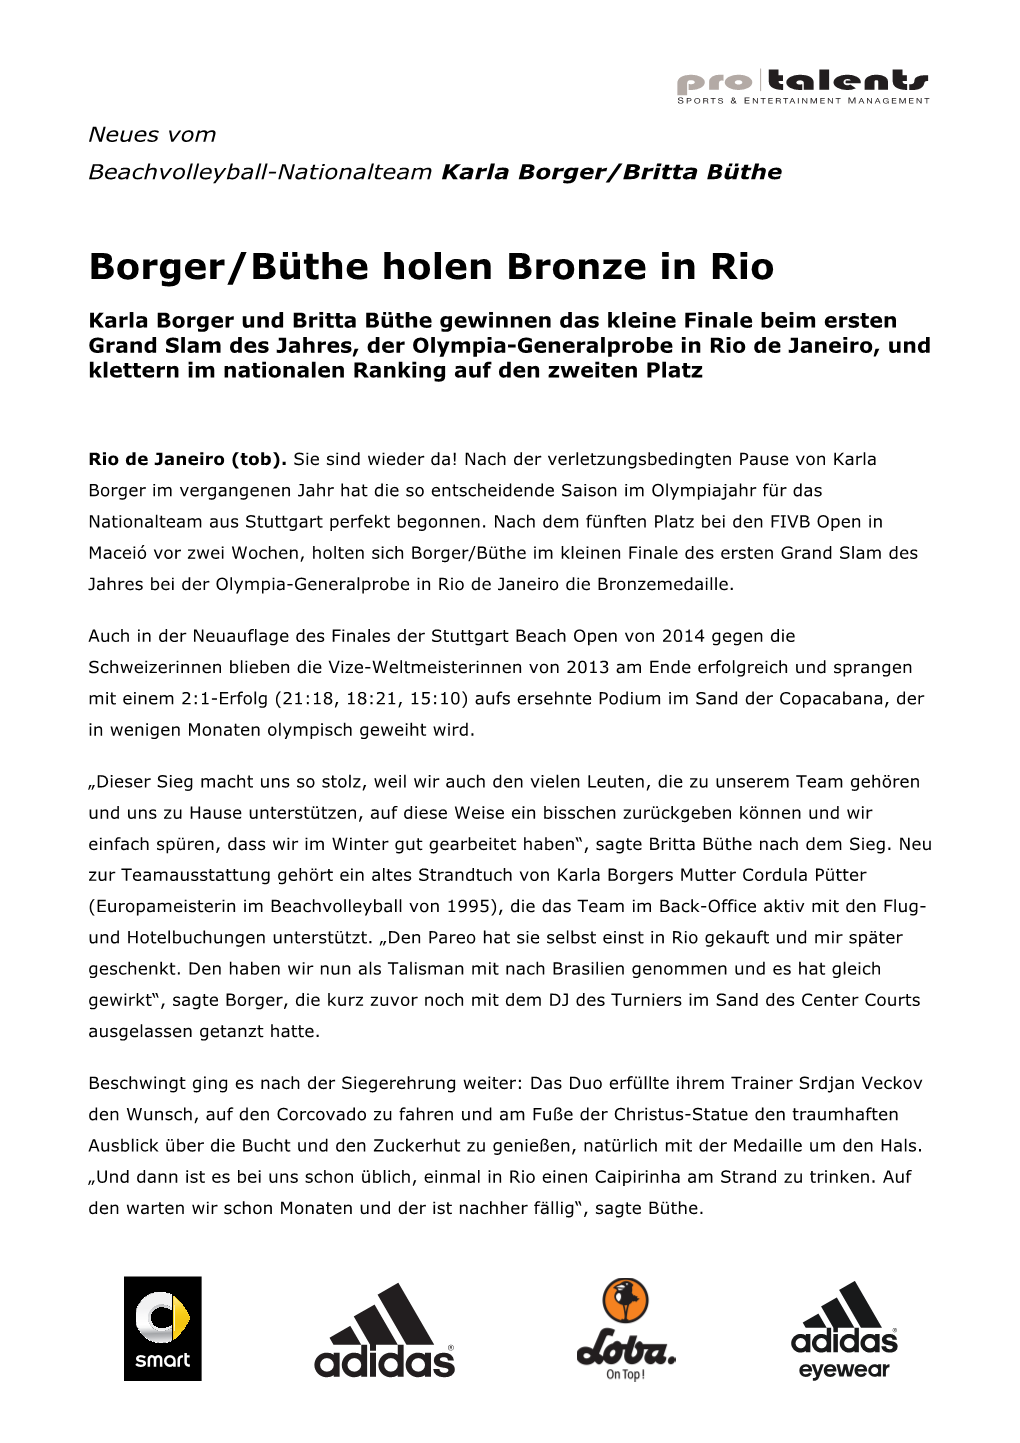 Borger/Büthe Holen Bronze in Rio